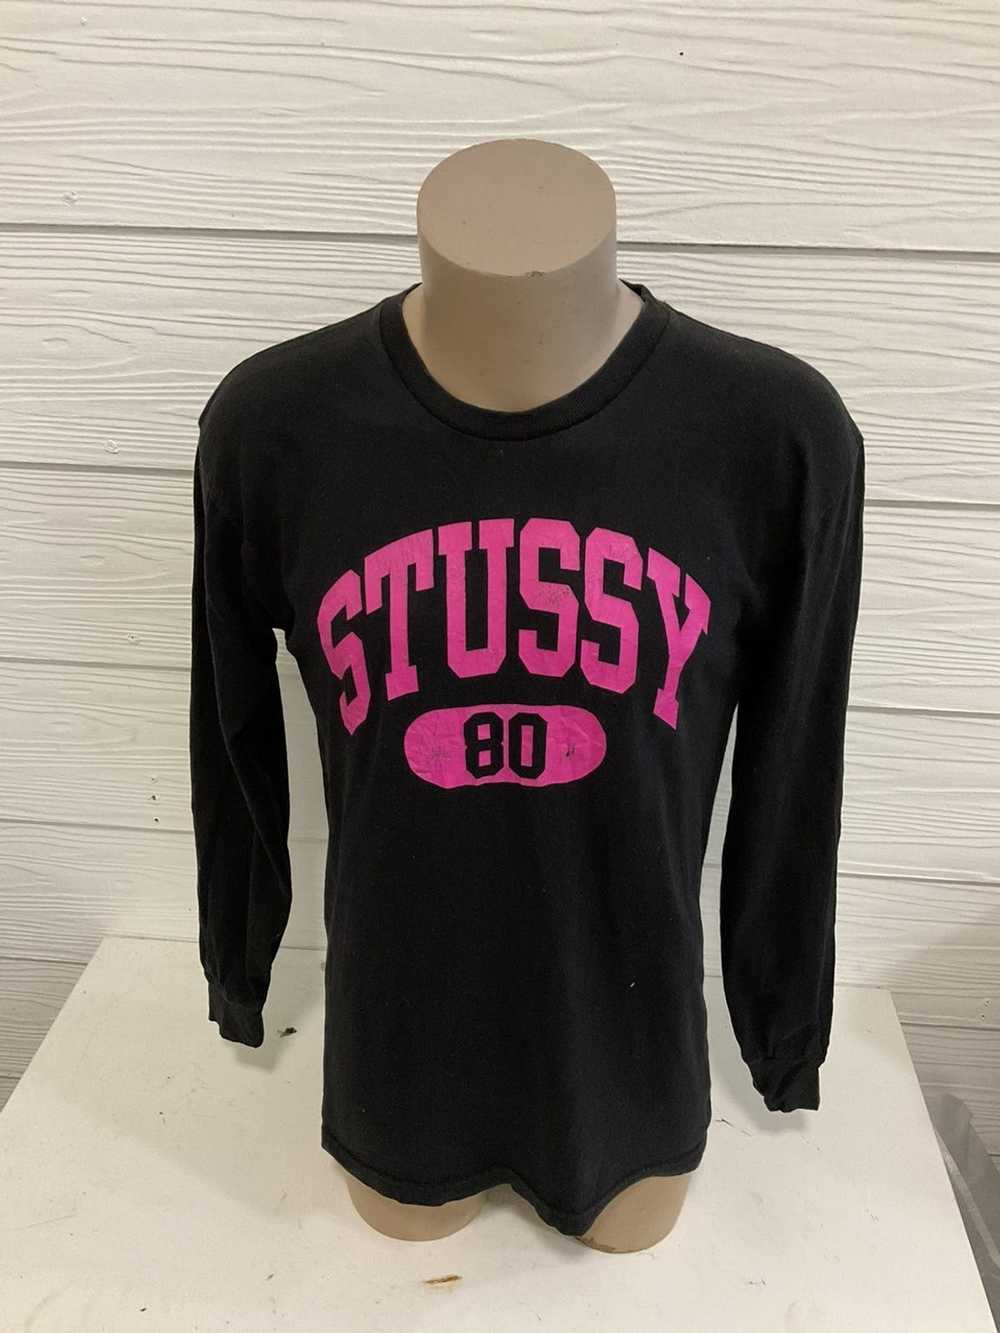 Streetwear × Stussy Stussy 80 tee - image 2